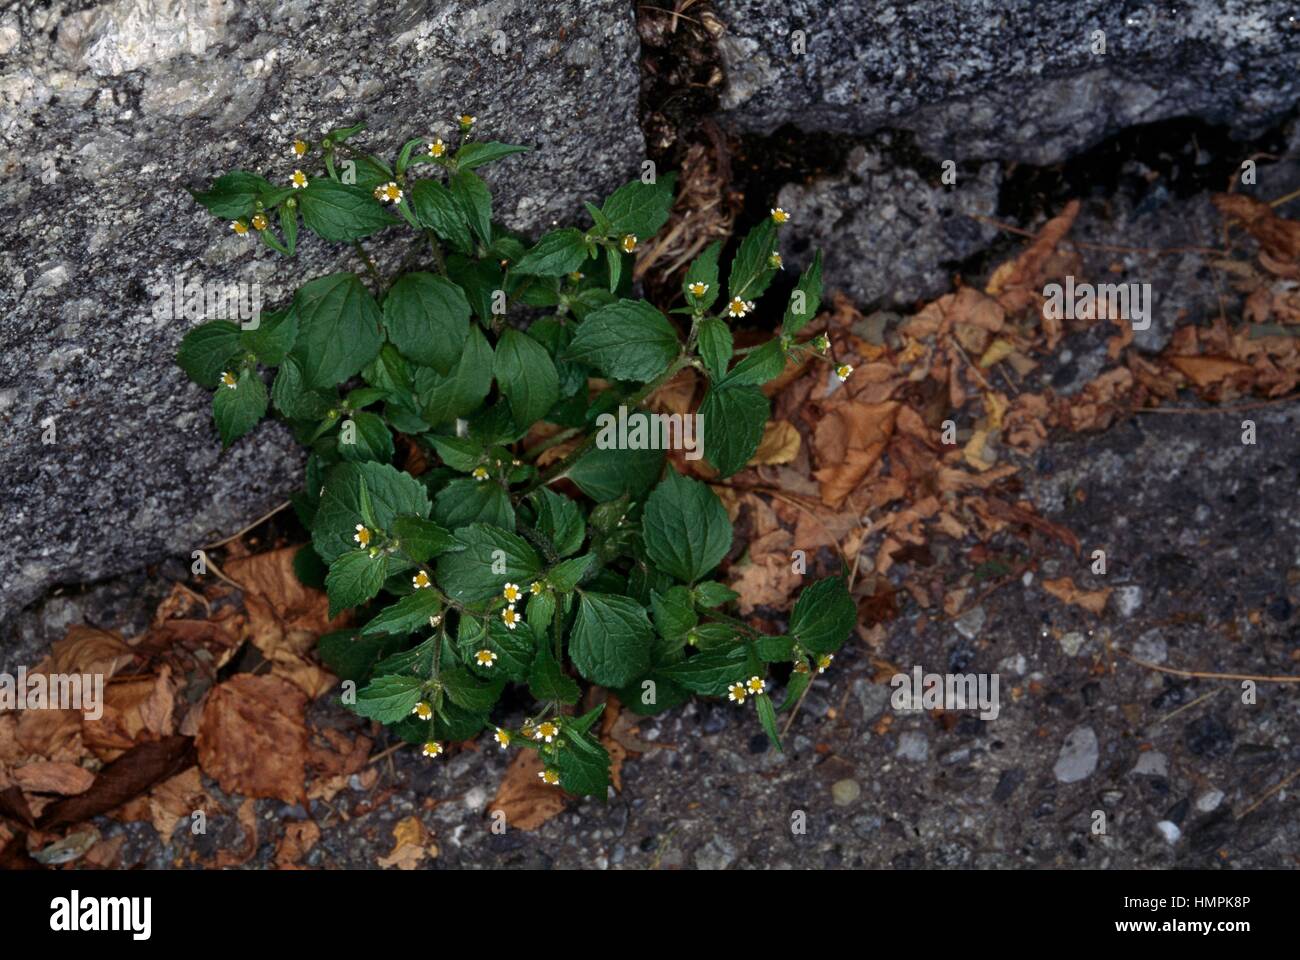 Gallant soldado o patata Weed (Galinsoga parviflora), Asteraceae. Foto de stock